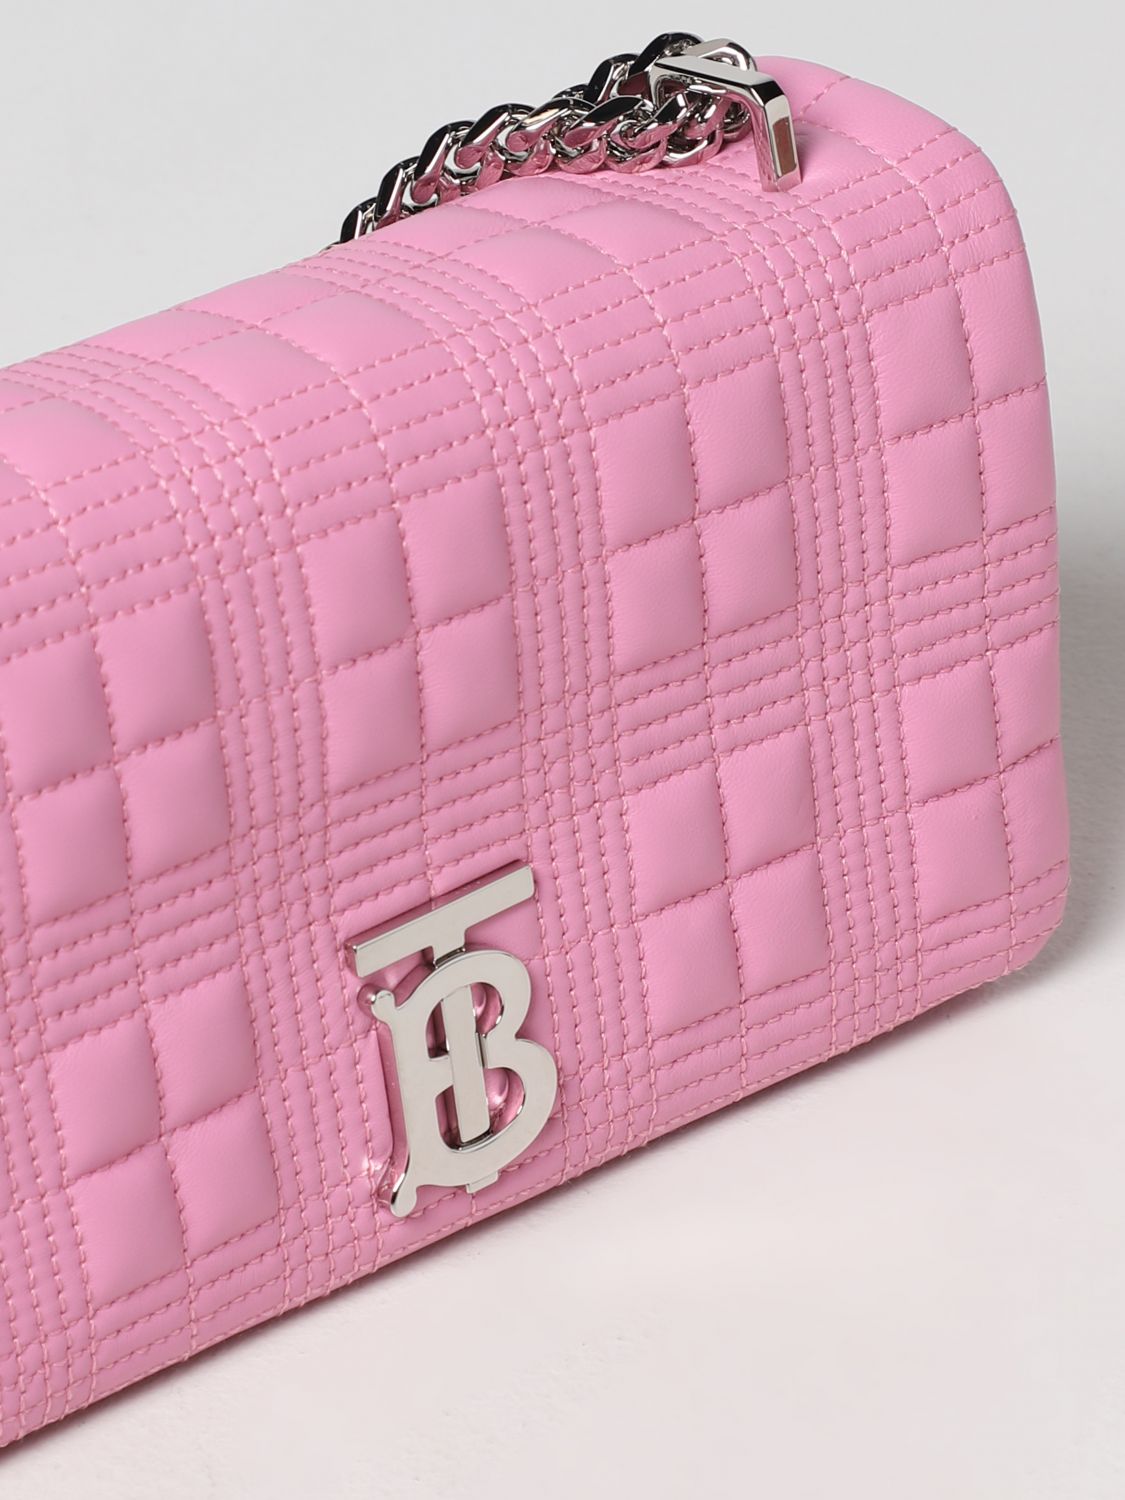 BURBERRY: Lola matelassé leather bag - Pink  Burberry shoulder bag 8045991  online at